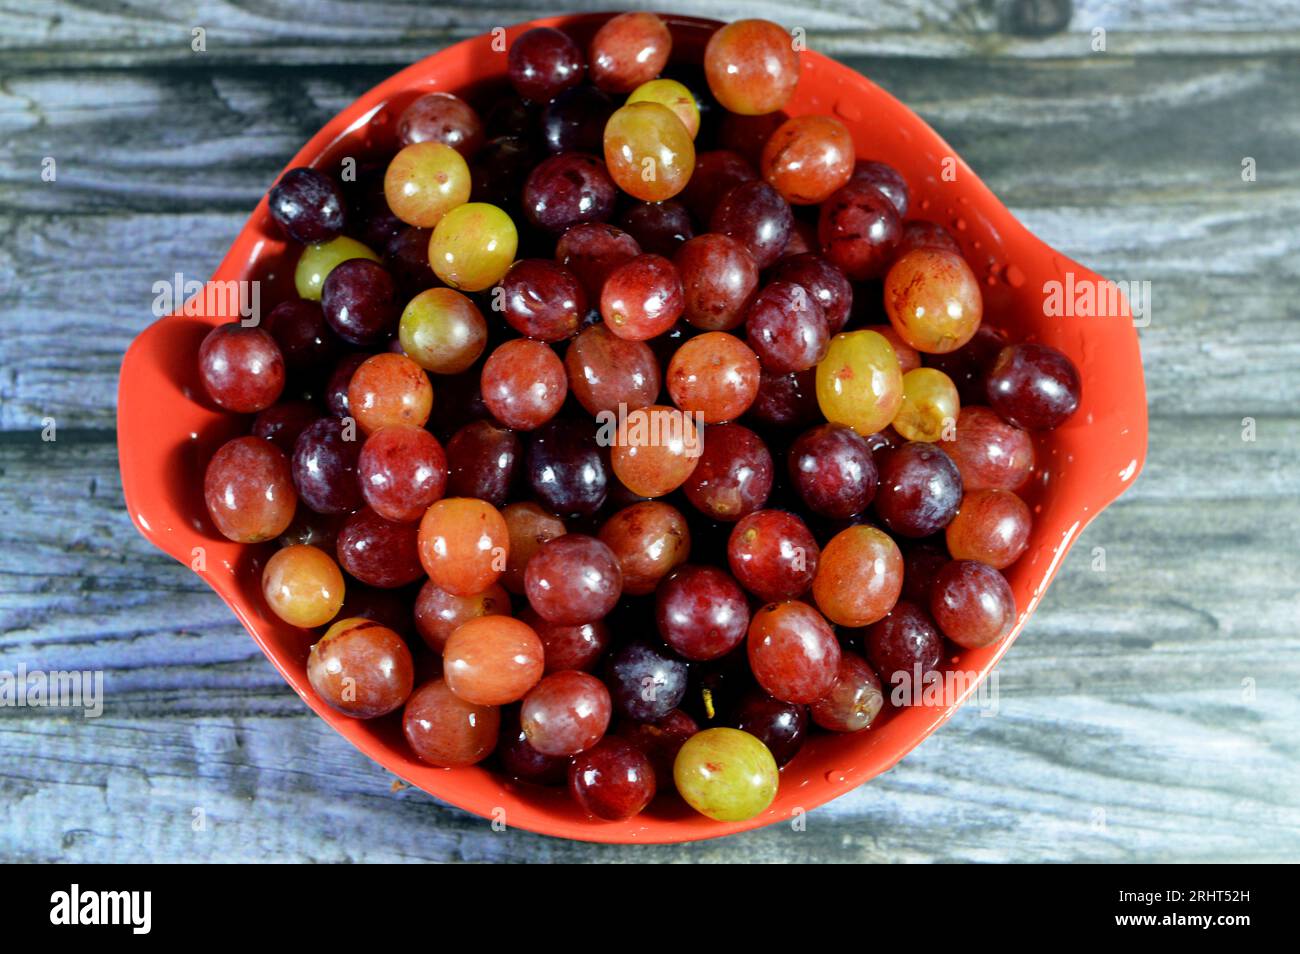 Rote Weintrauben, eine Frucht, botanisch eine Beere der Laubholzreben der blühenden Pflanzengattung Vitis. Trauben sind nicht klimakterische Obstsorten; Stockfoto